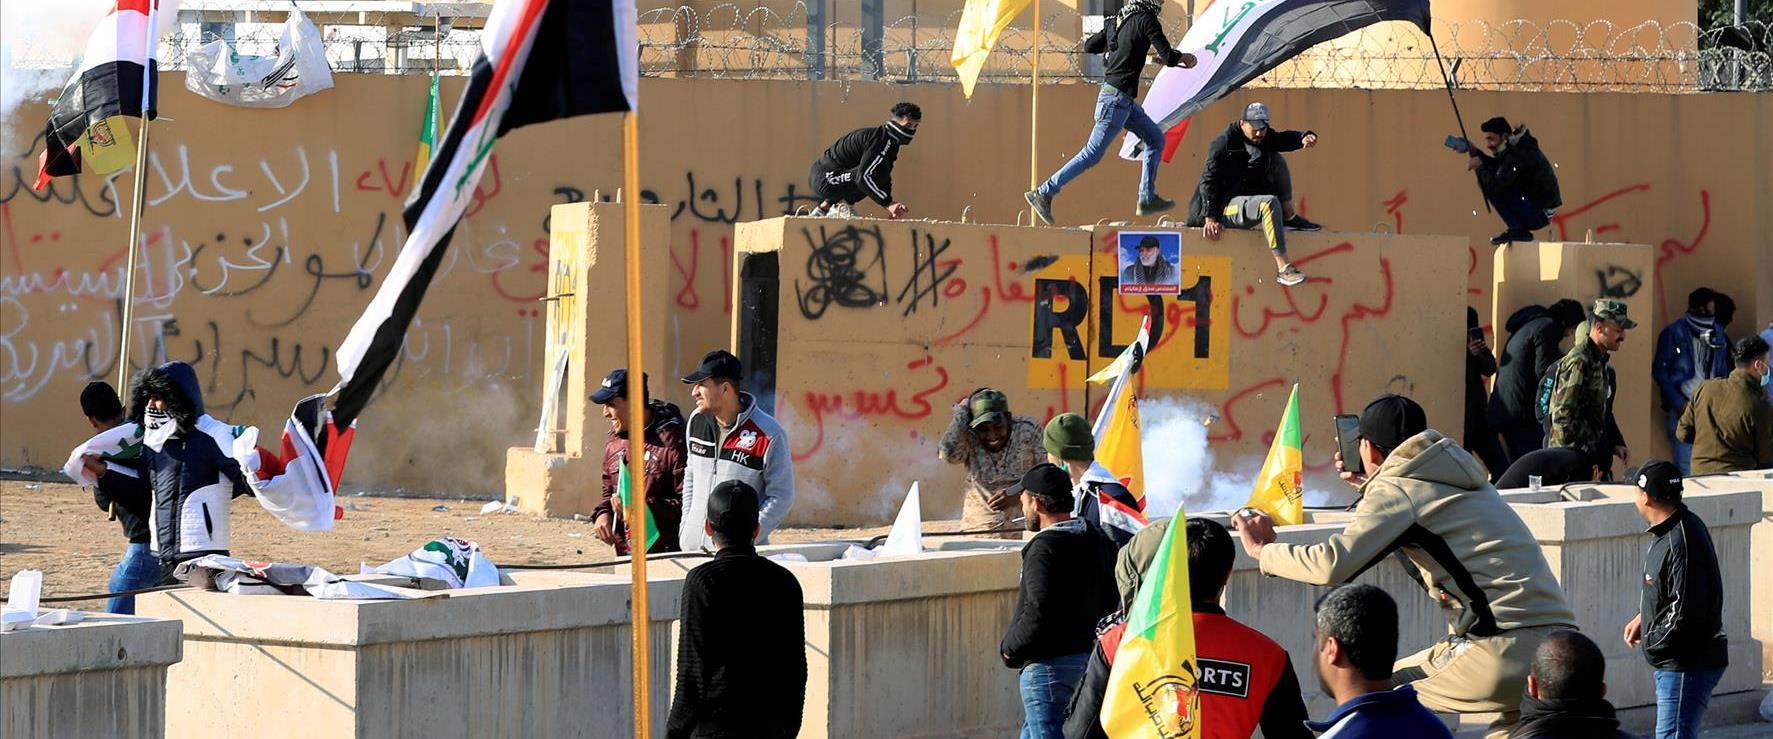 הפגנות בשגרירות ארה"ב בעיראק